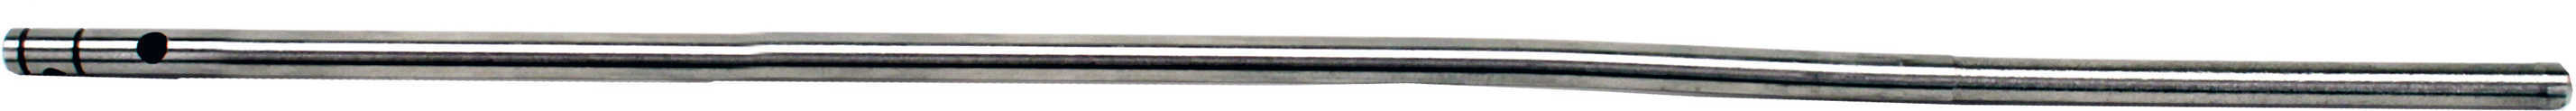 Hogue AR15 Metal Gas Tube Bent Carbine AR Forend 00014